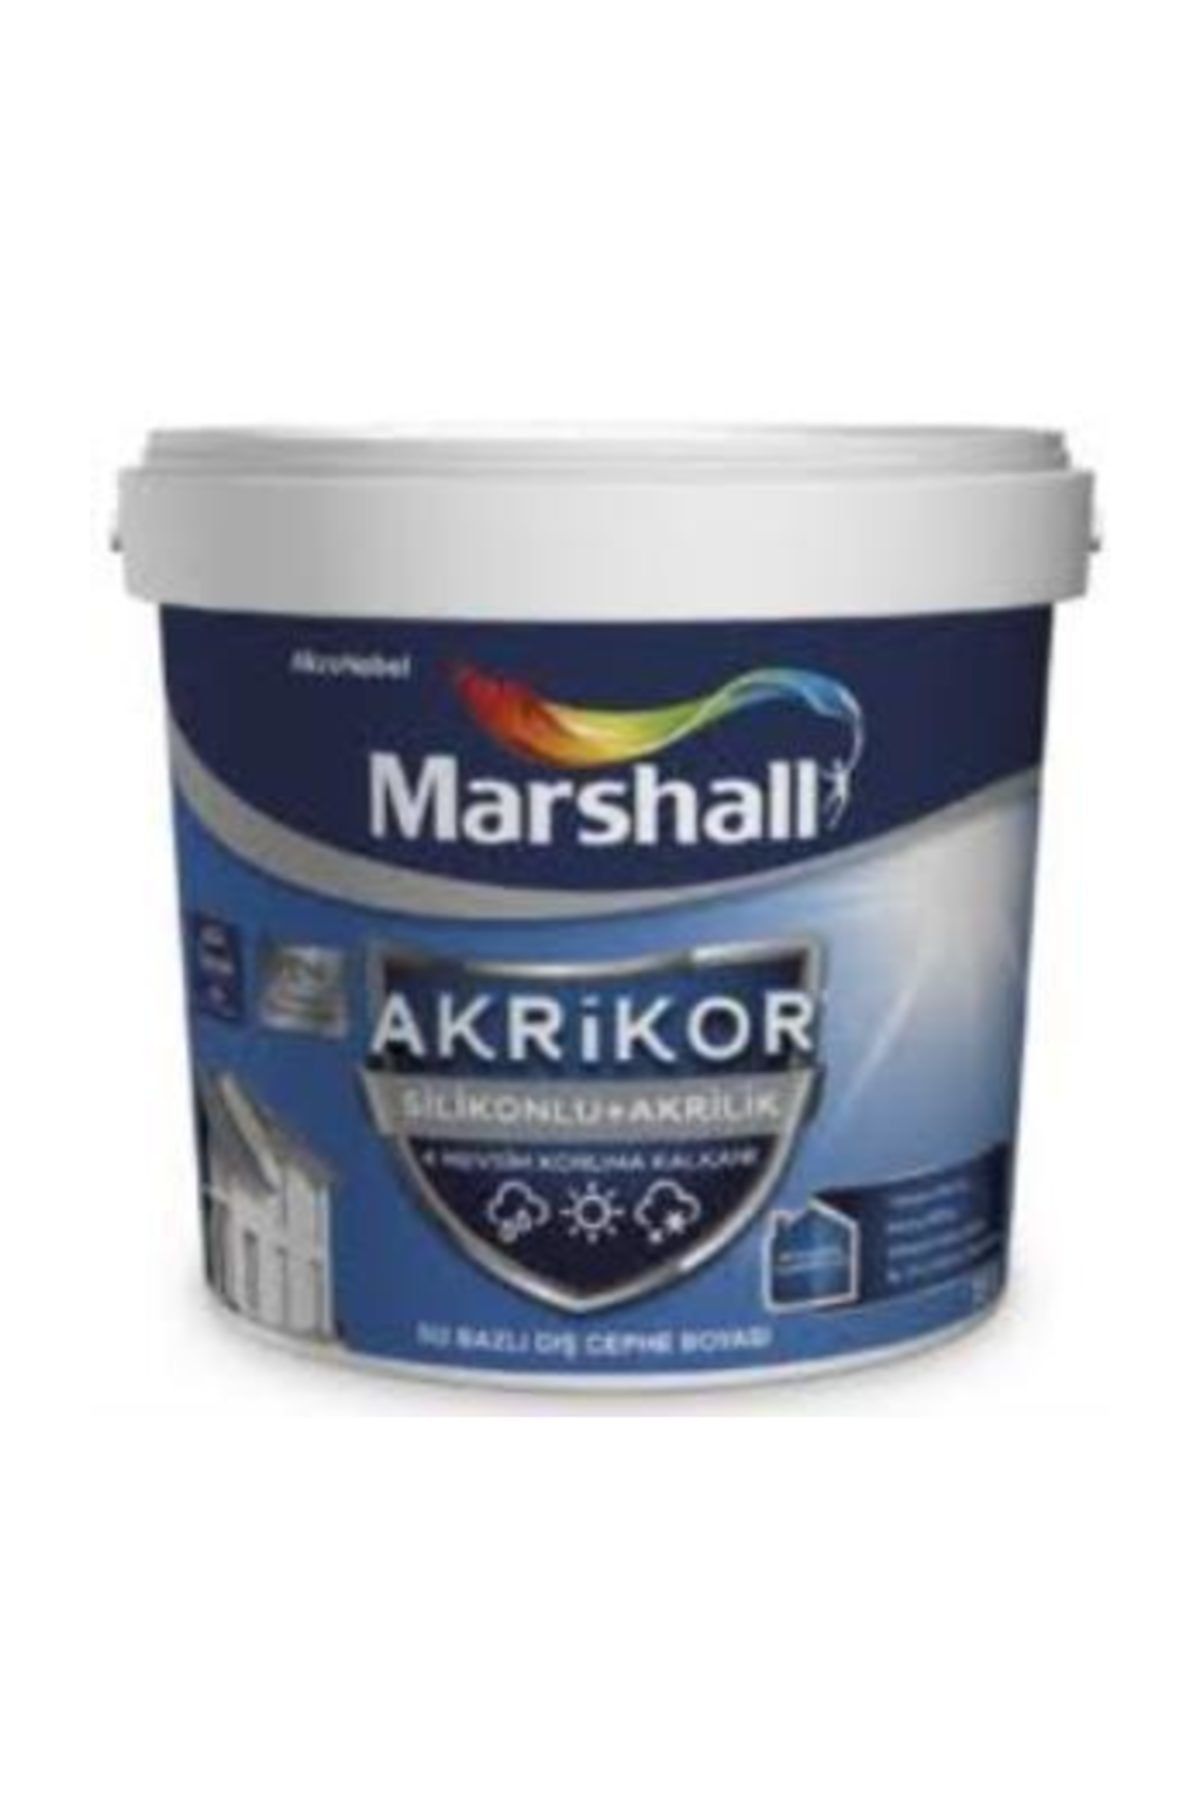 Marshall Akrikor Silikonlu + Akrilik Dış Cephe Boyası 15 lt Beyaz